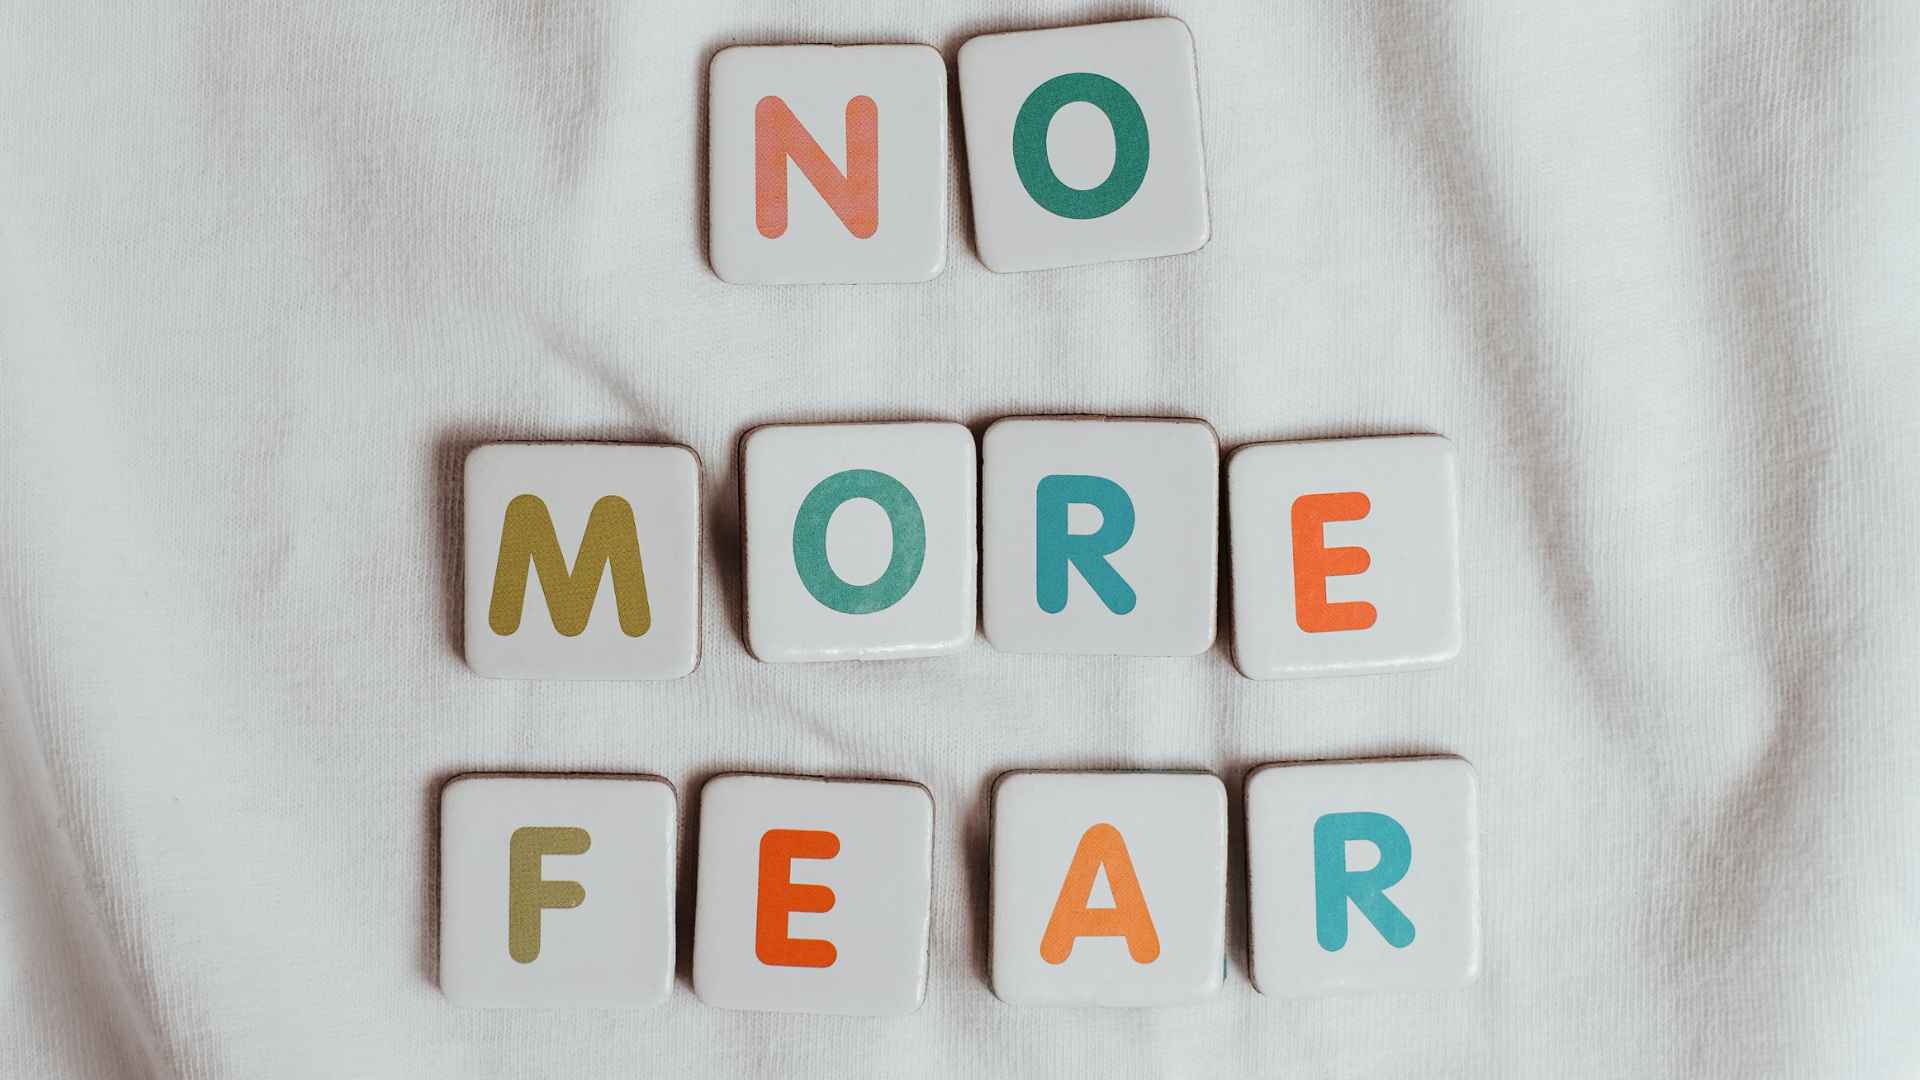 Steine mit Buchstaben, die "No more fear" schreiben.